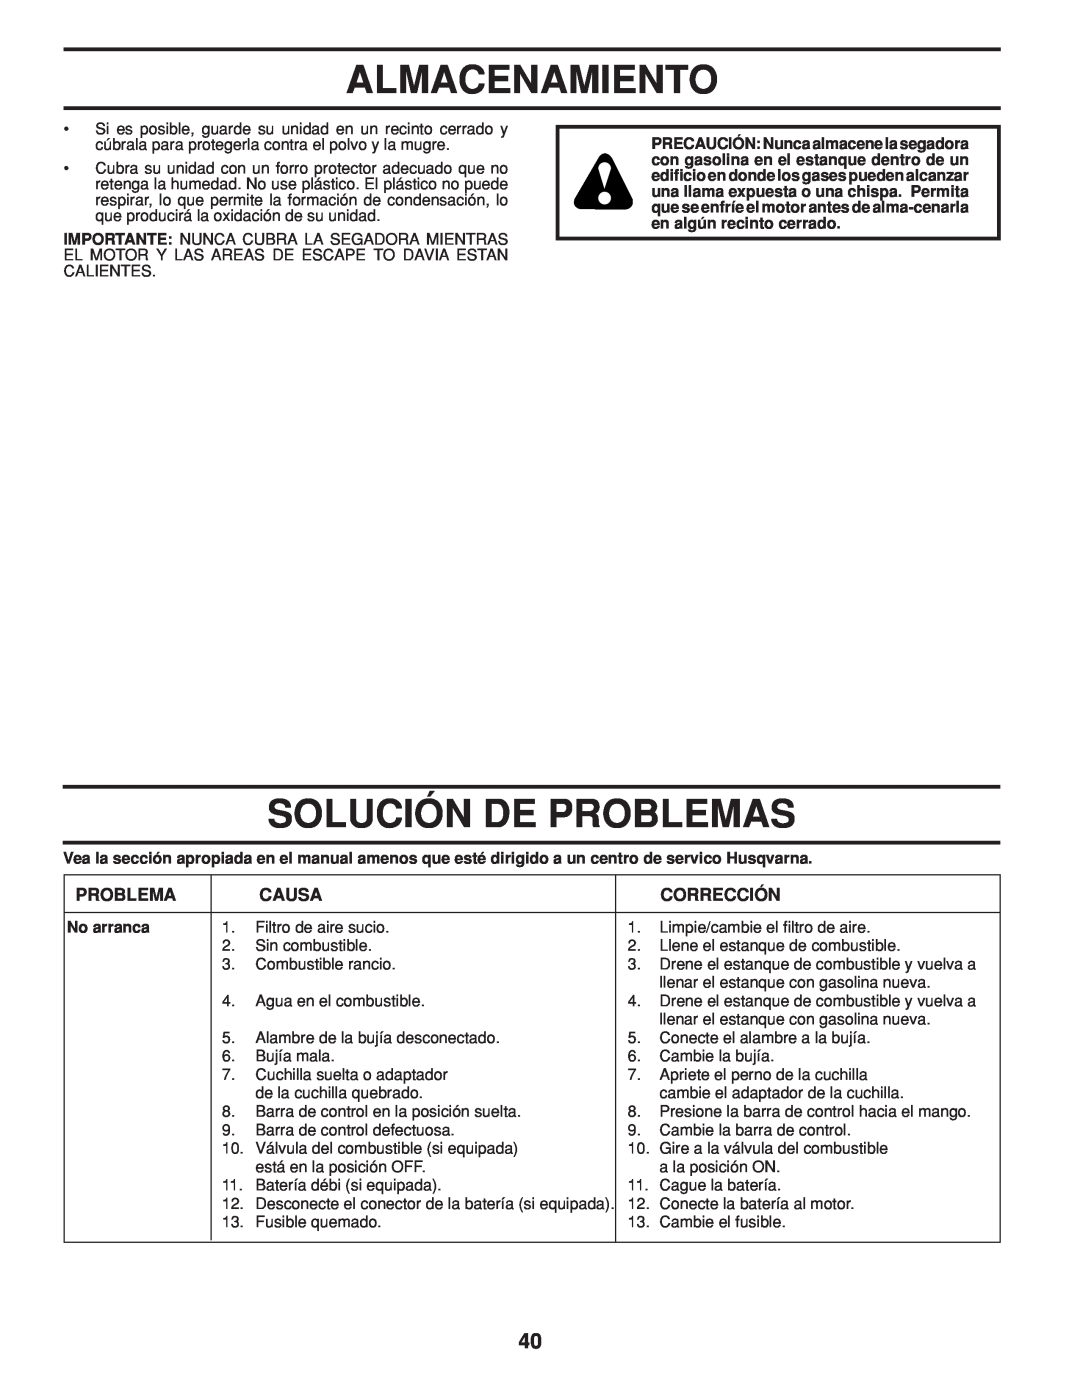 Husqvarna 961430103, 961430104 warranty Solución De Problemas, Almacenamiento, Causa, Corrección, No arranca 